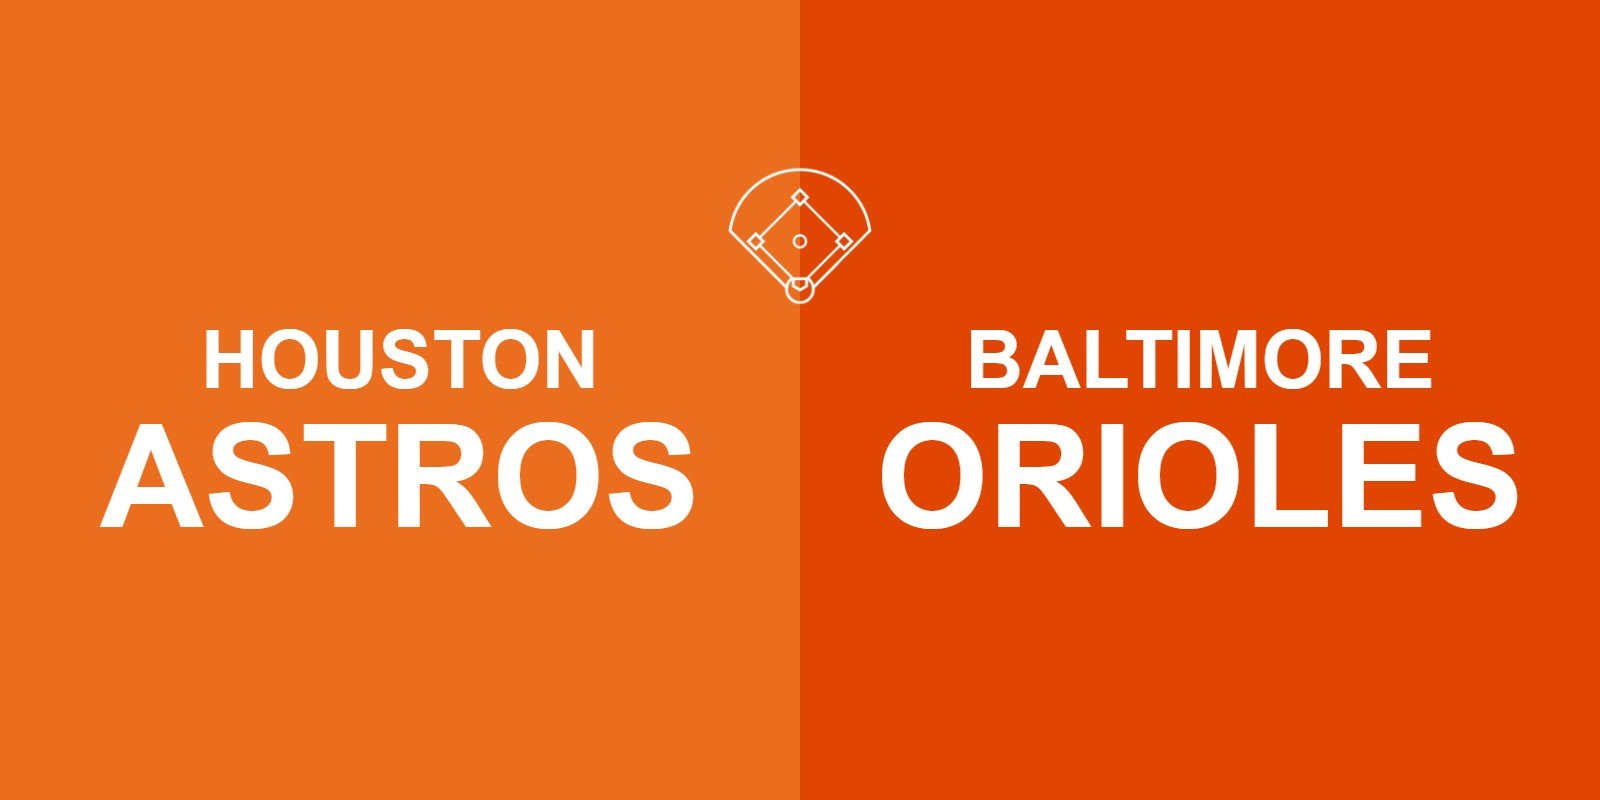 Astros vs Orioles